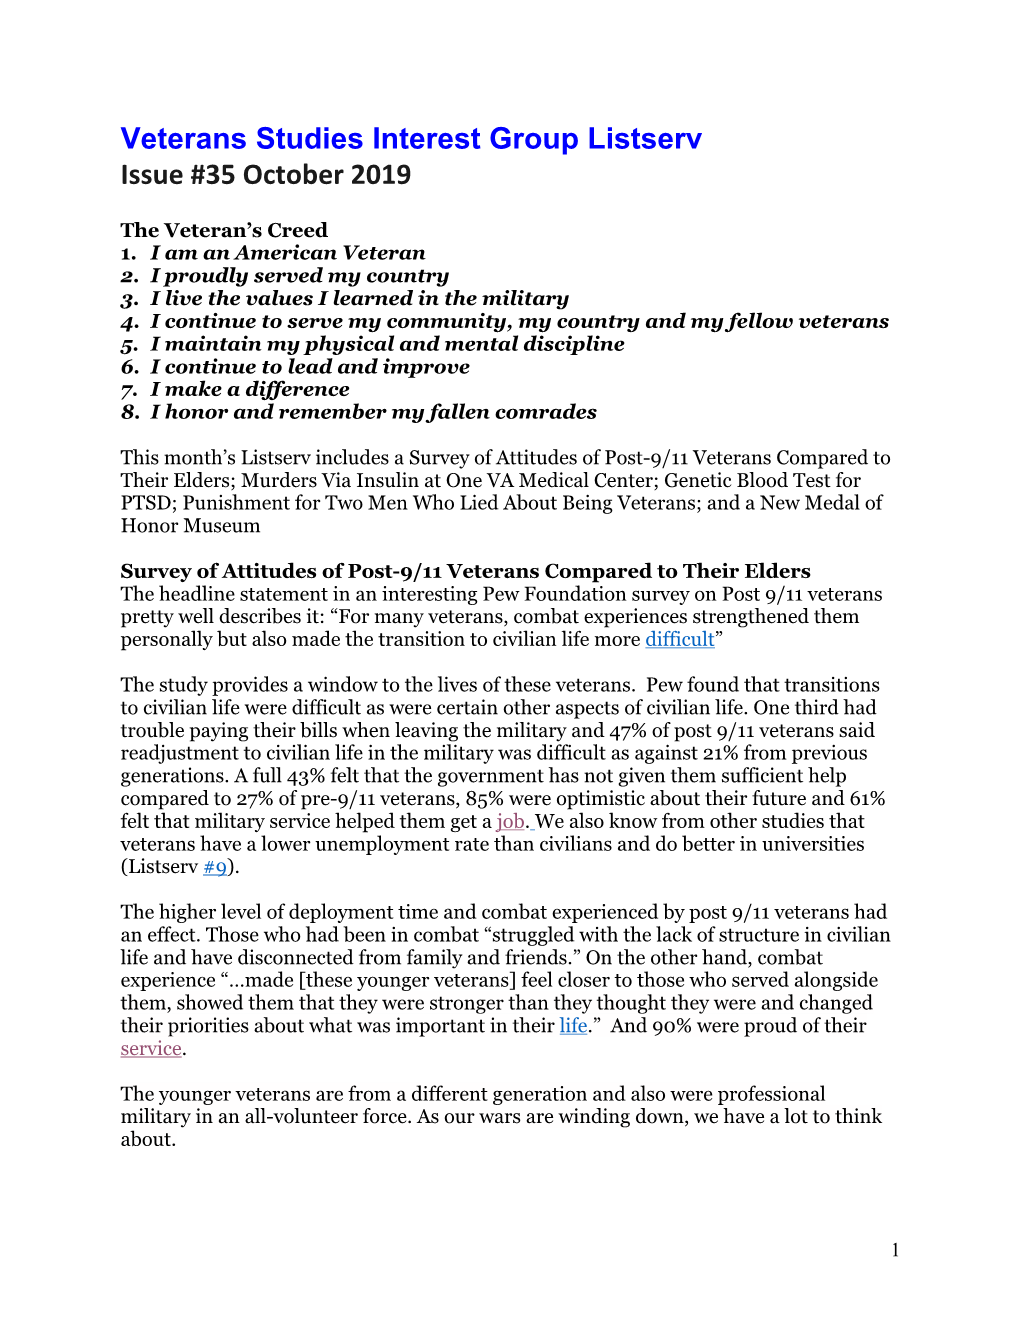 Veterans Studies Interest Group Listserv Issue #35 October 2019